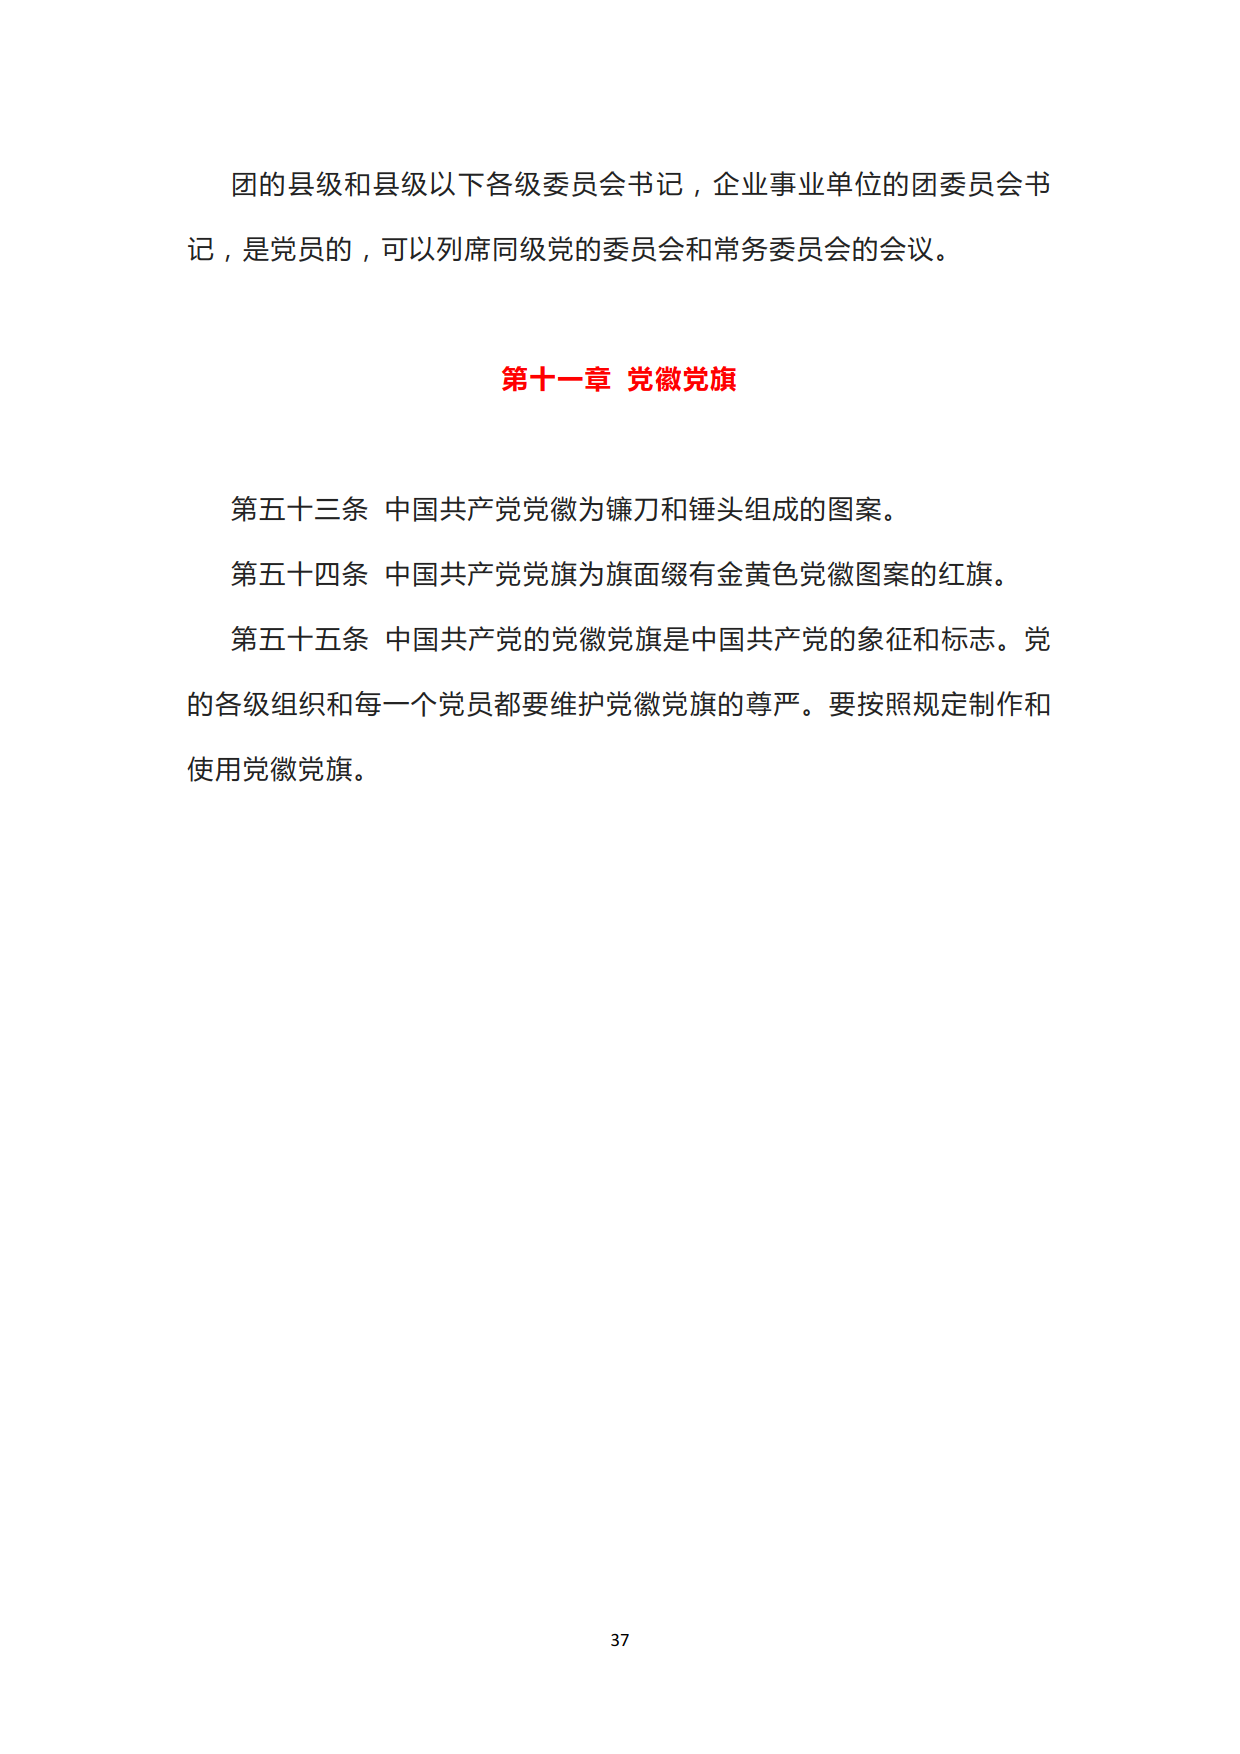 中国共产党章程_37.png